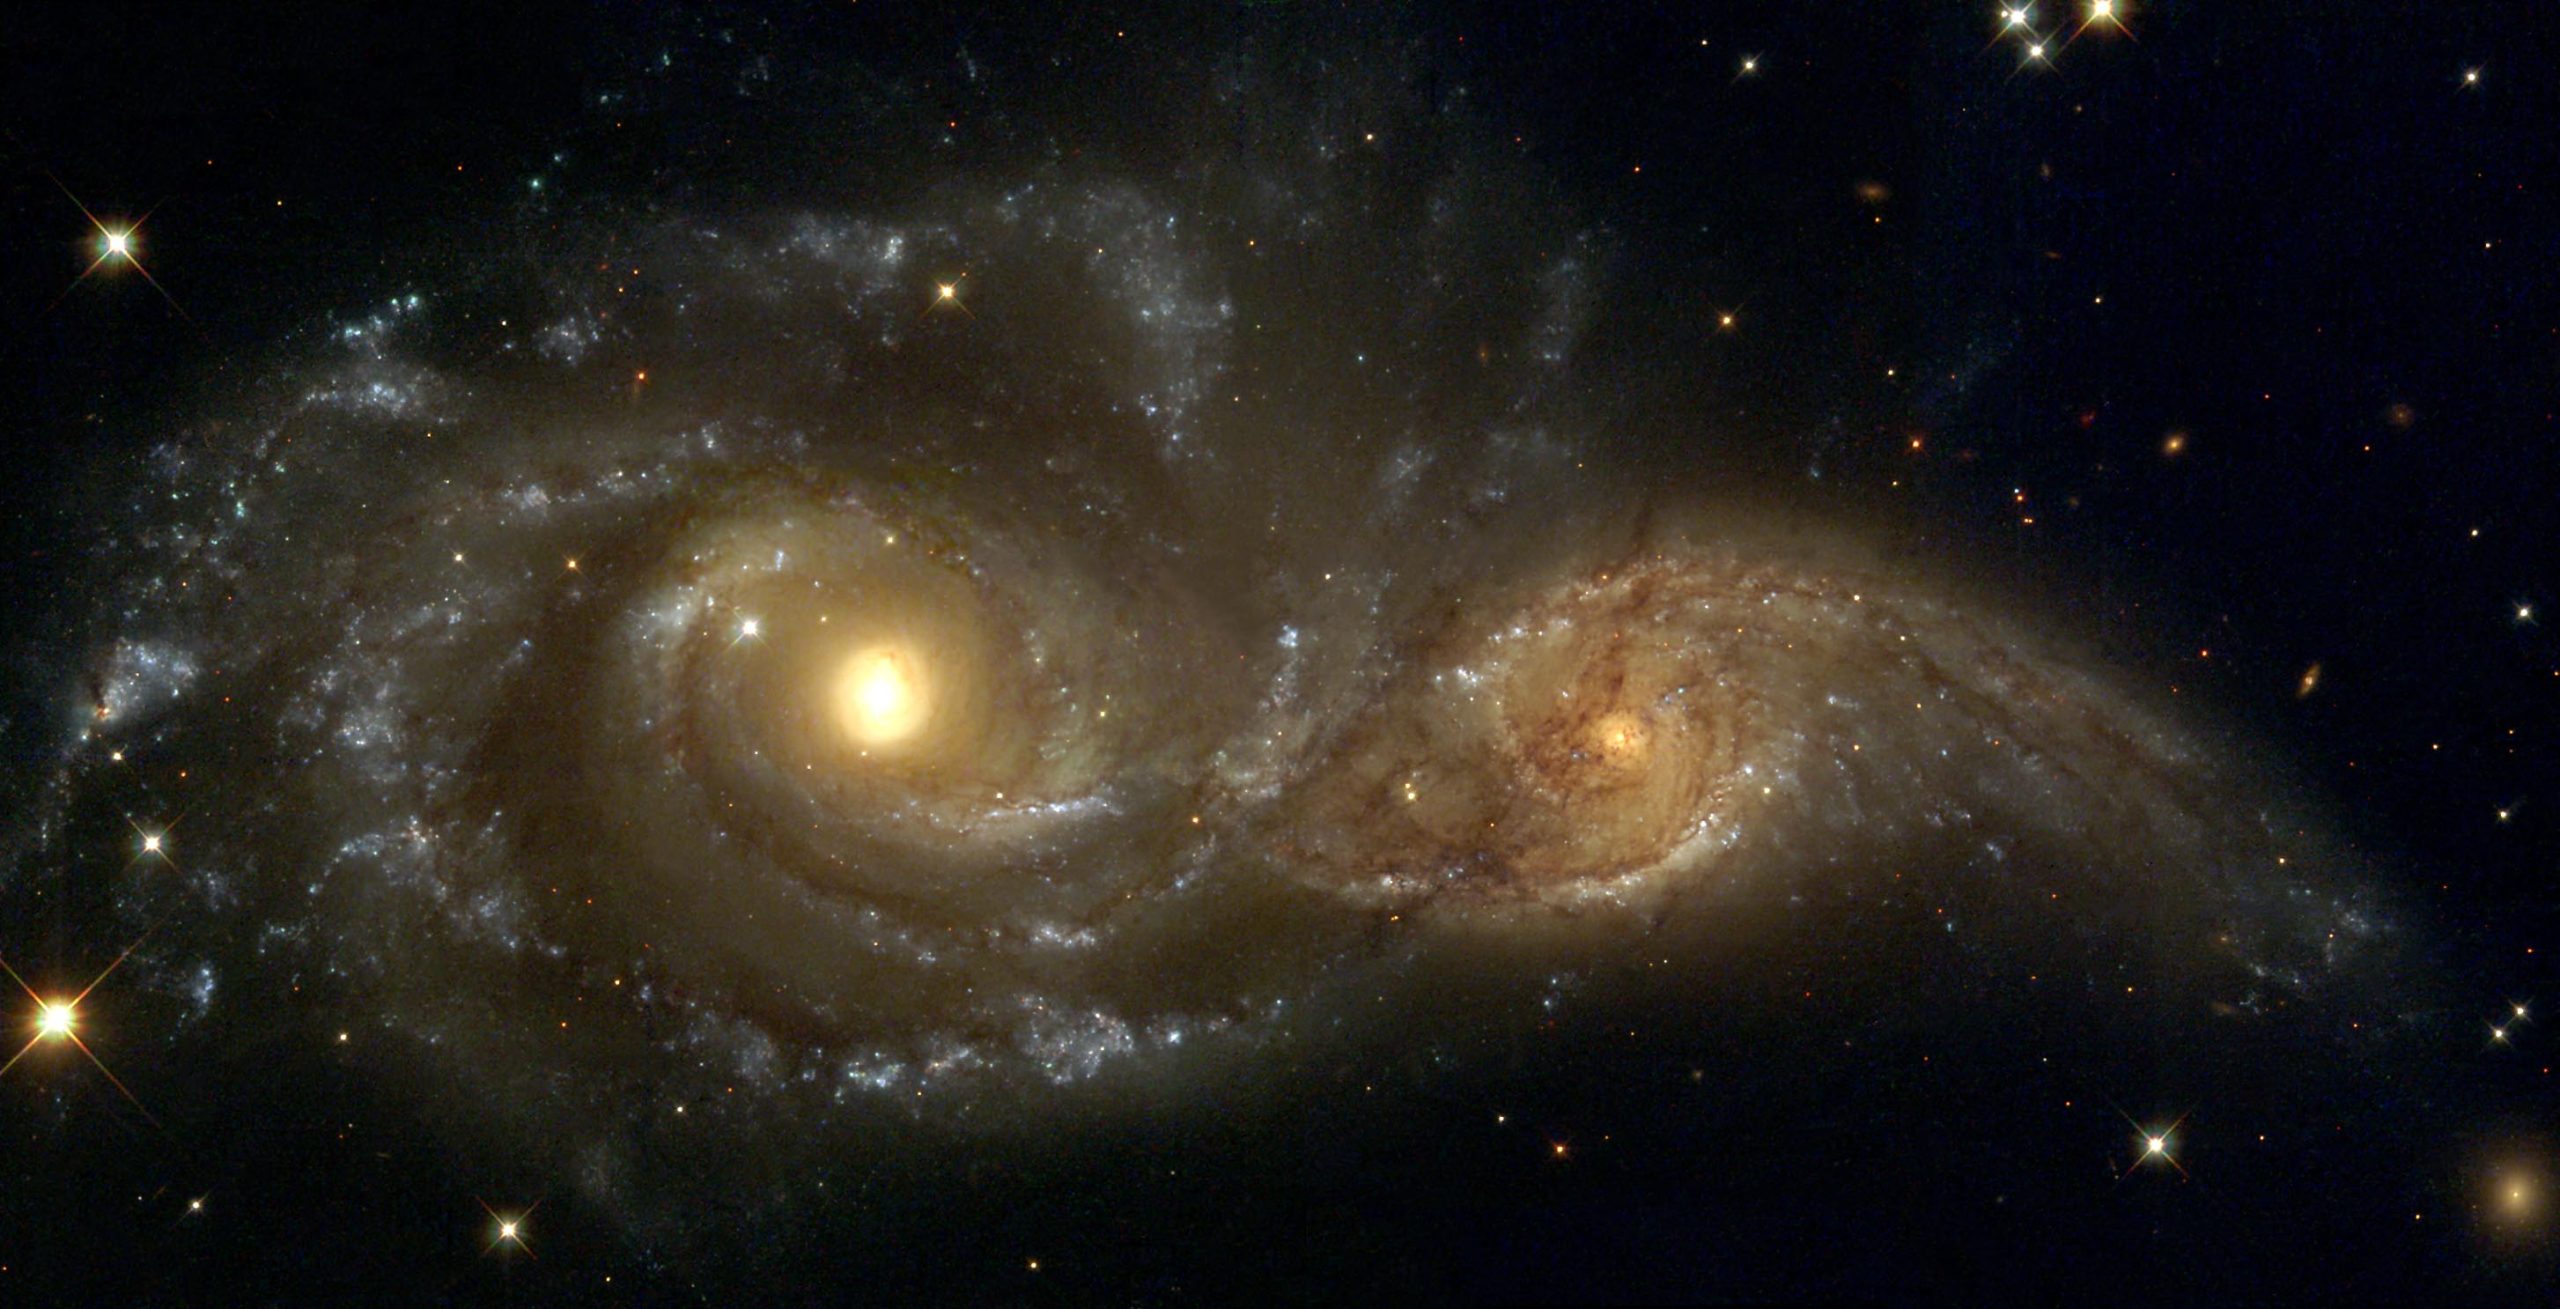 Ζώνη ραδιοεκπομπων μήκους 10 εκατ. ετών φωτός μεταξύ δύο γαλαξιών που οδεύουν σε σύγκρουση